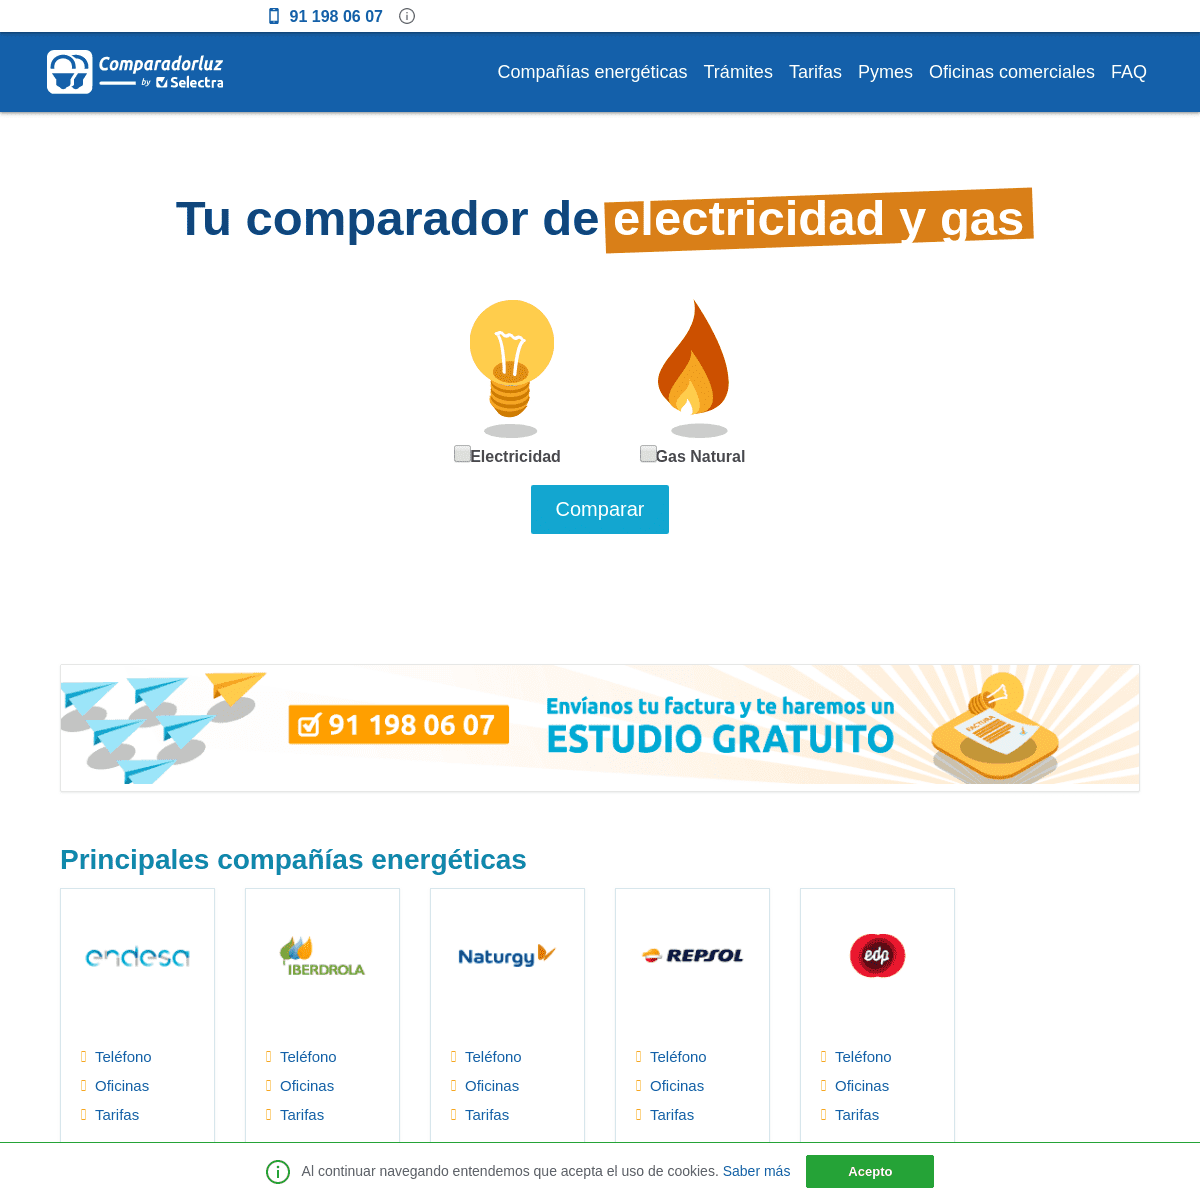 A complete backup of comparadorluz.com